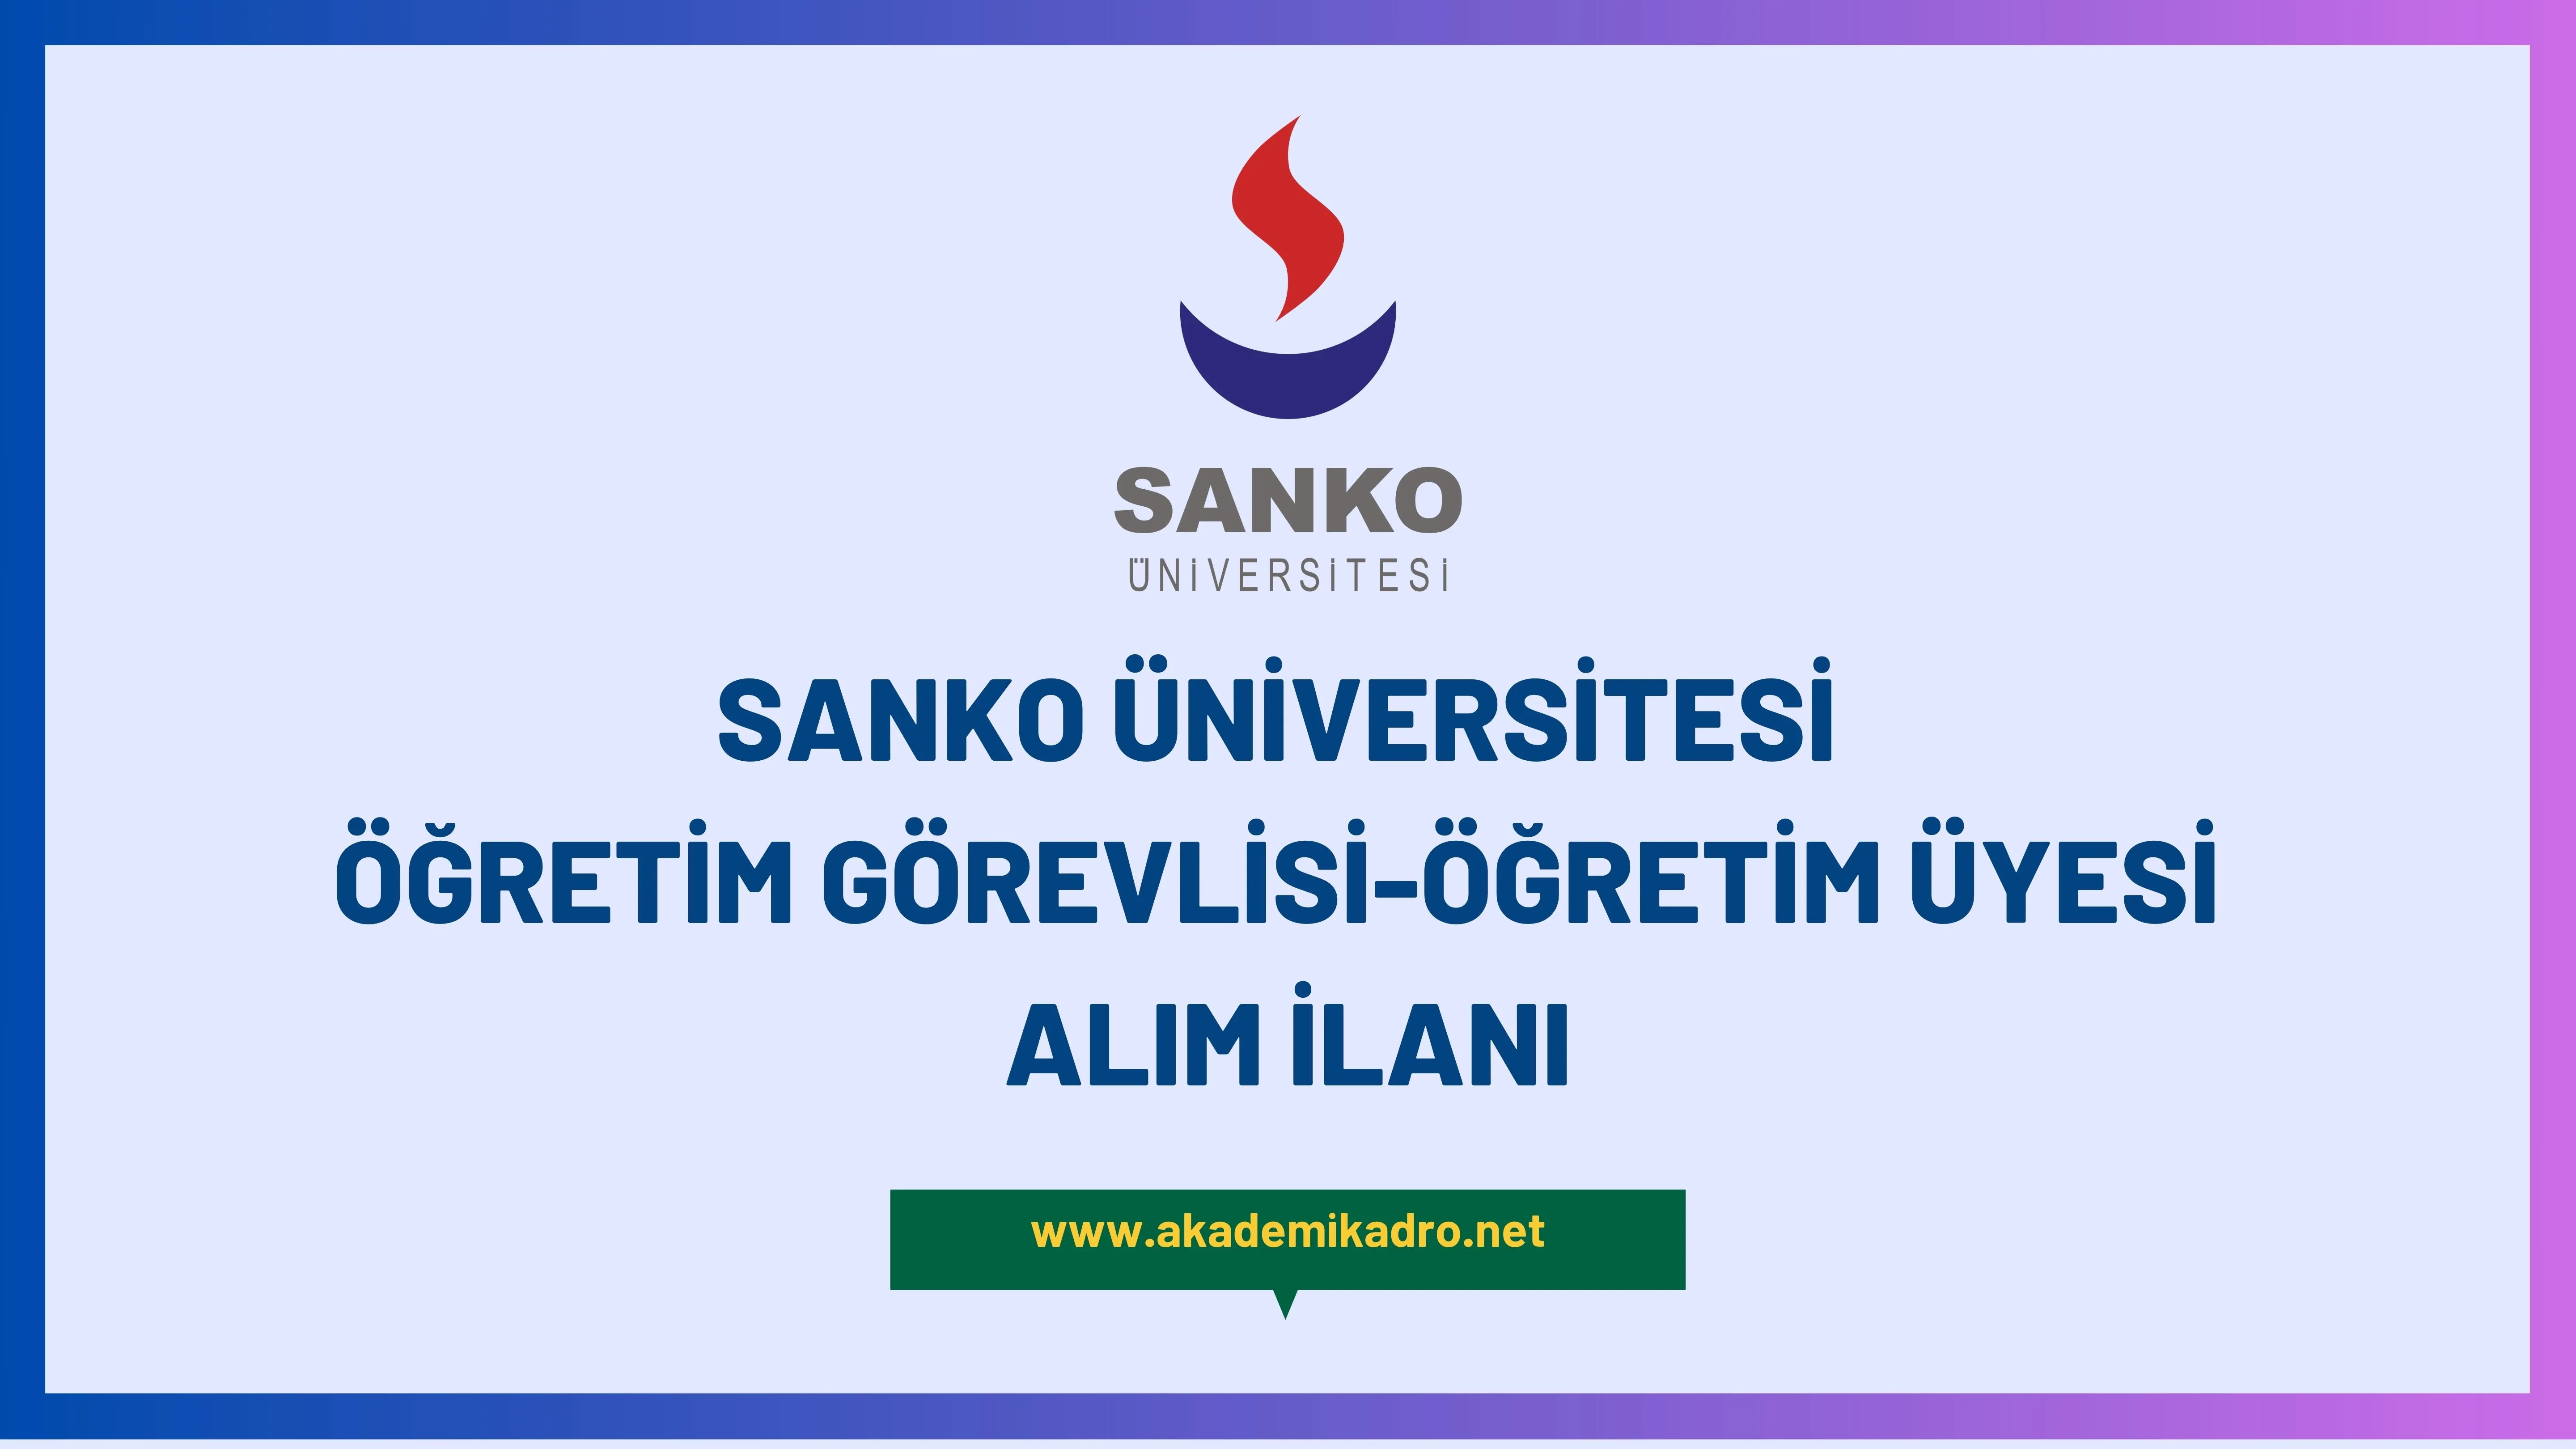 Sanko Üniversitesi 3 Öğretim görevlisi ve 34 Öğretim üyesi alacak.